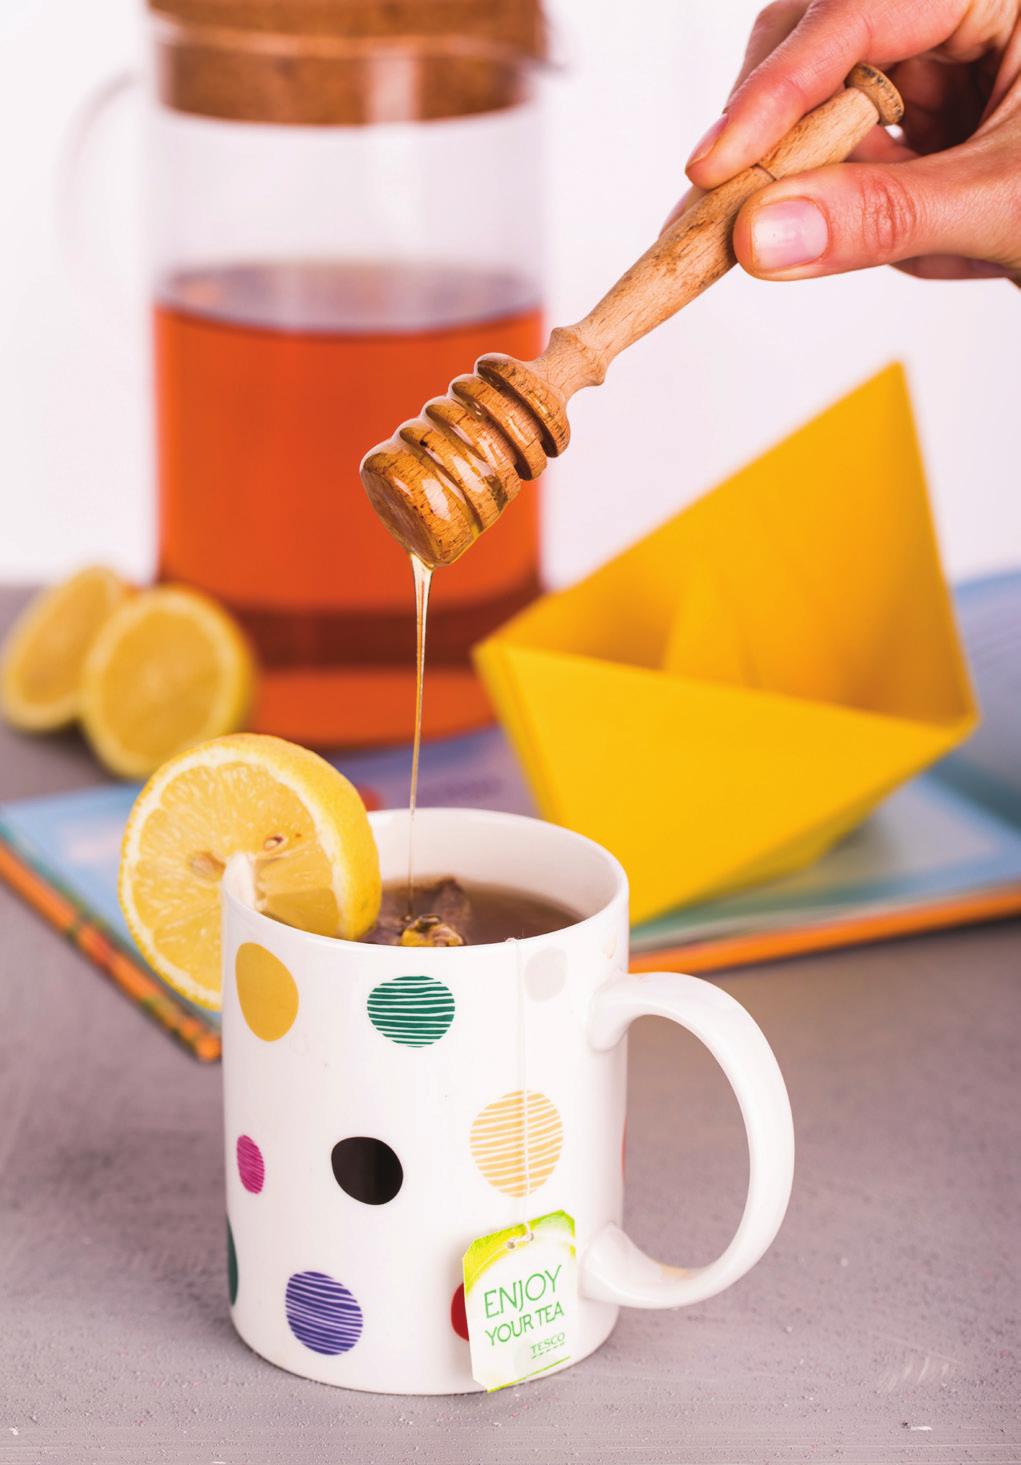 Tipy na nápoje Čaj Roiboos 10 minut čaj Roiboos vodu Proces přípravy čaje už máte určitě pevně zažitý stačí jen přidat vodu.